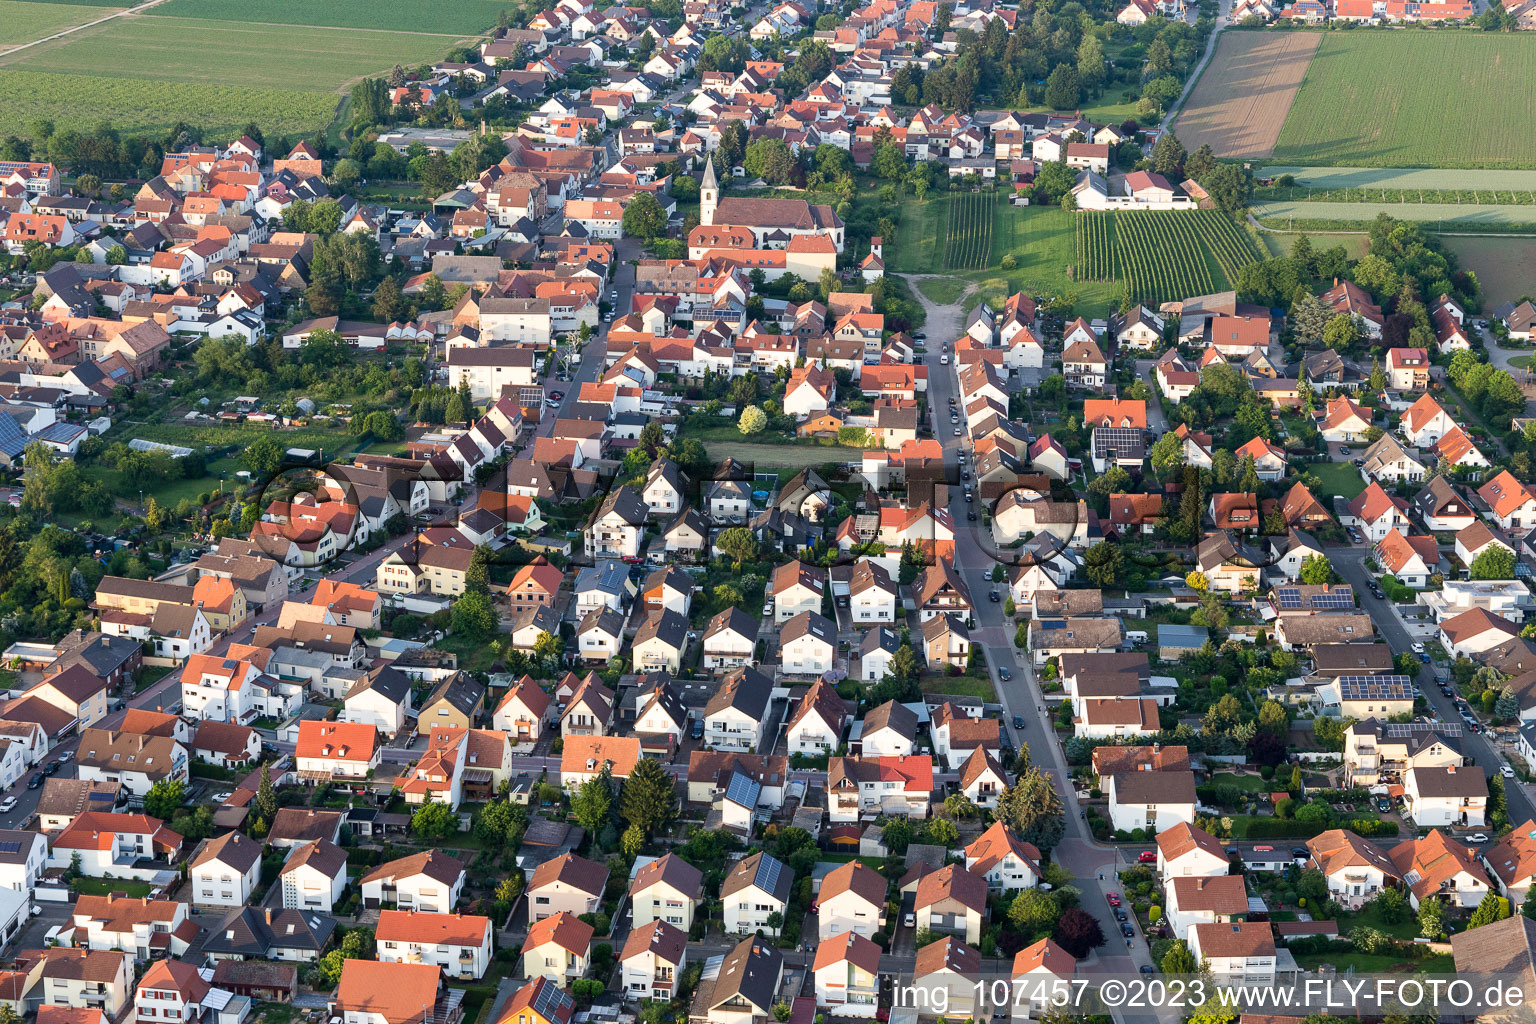 Aerial view of Rödersheim-Gronau in the state Rhineland-Palatinate, Germany